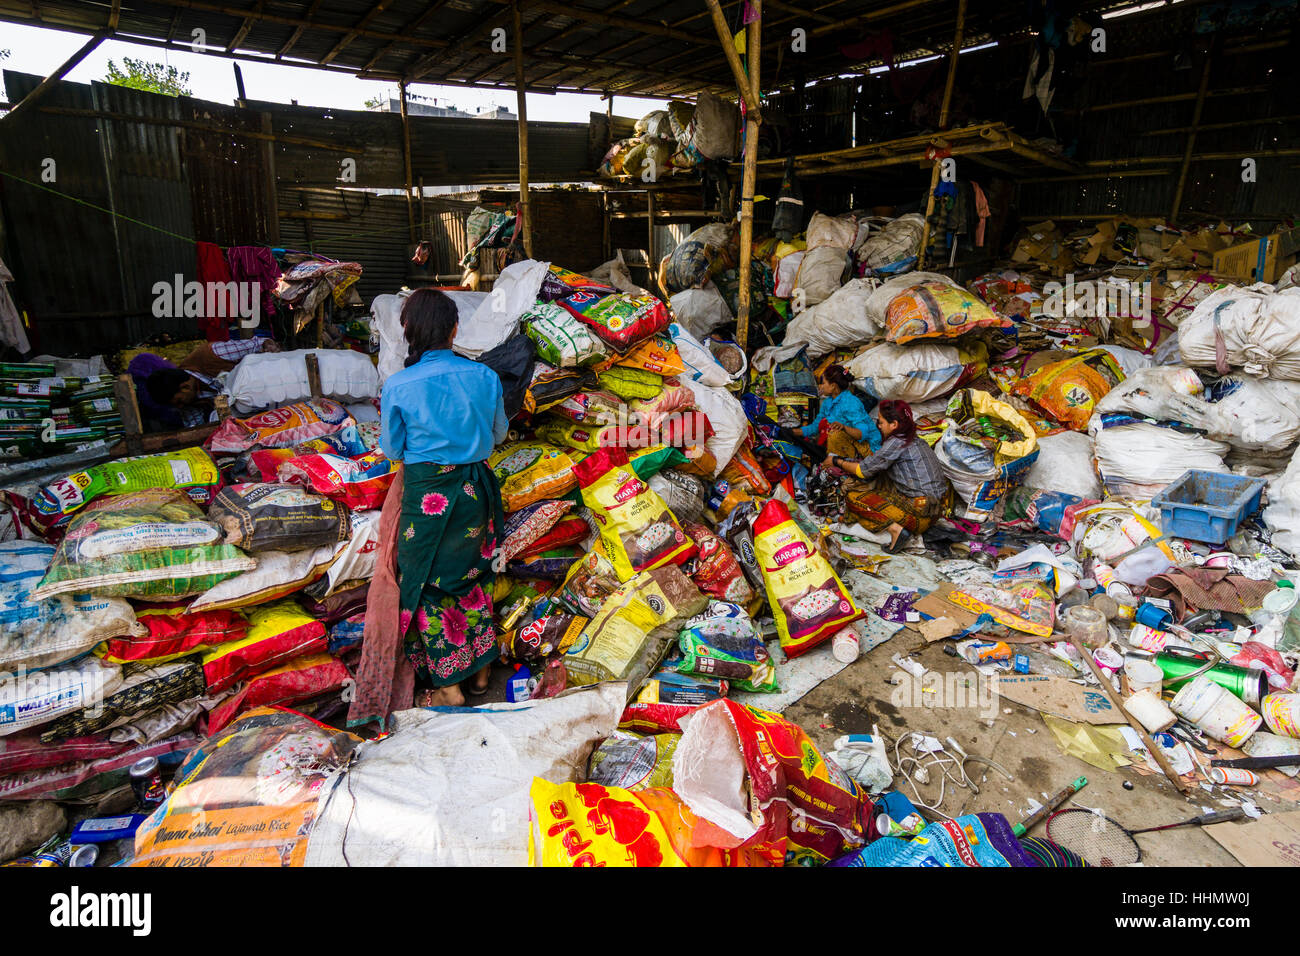 Le tri des déchets dans femme un abri pour le recyclage, Katmandou, Népal Banque D'Images